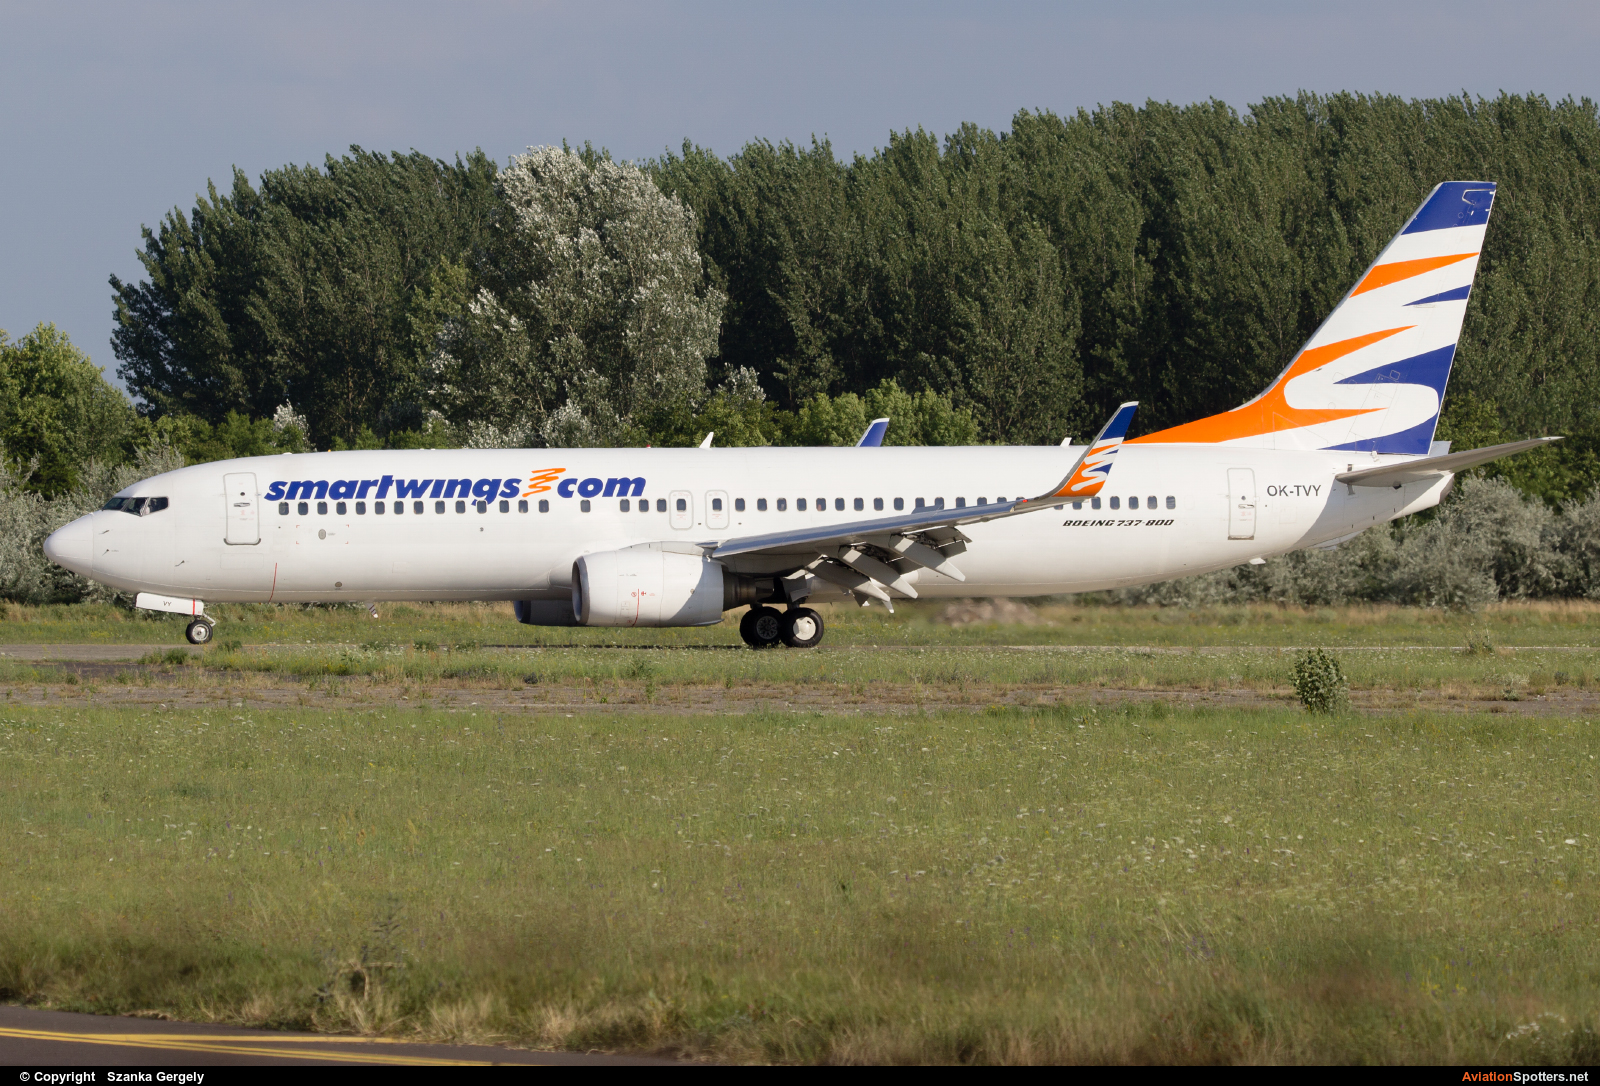 Smart Wings  -  737-800  (OK-TVY) By Szanka Gergely (TaxisGeri)